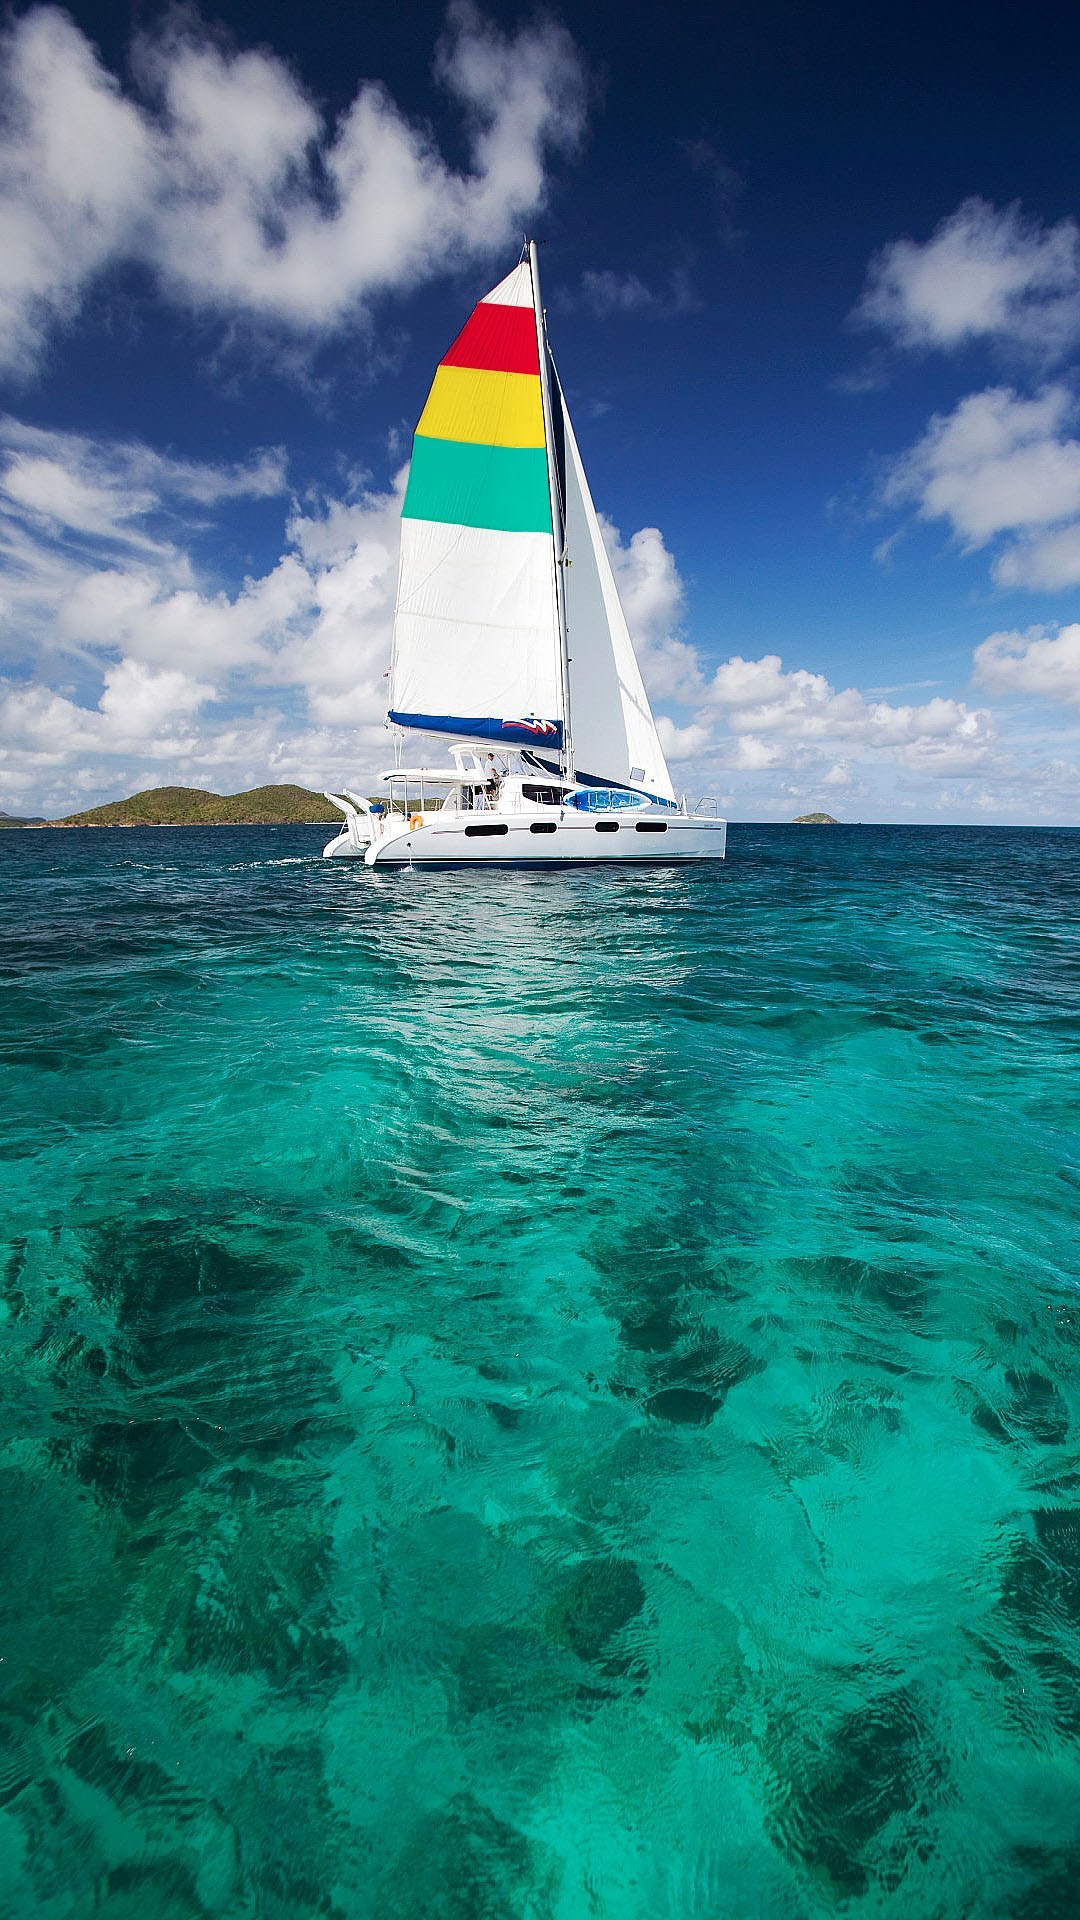 1080x1920 Sailing in the sea of emerald greenâµ - iPhone wallpaper | iPhone Wallpaper